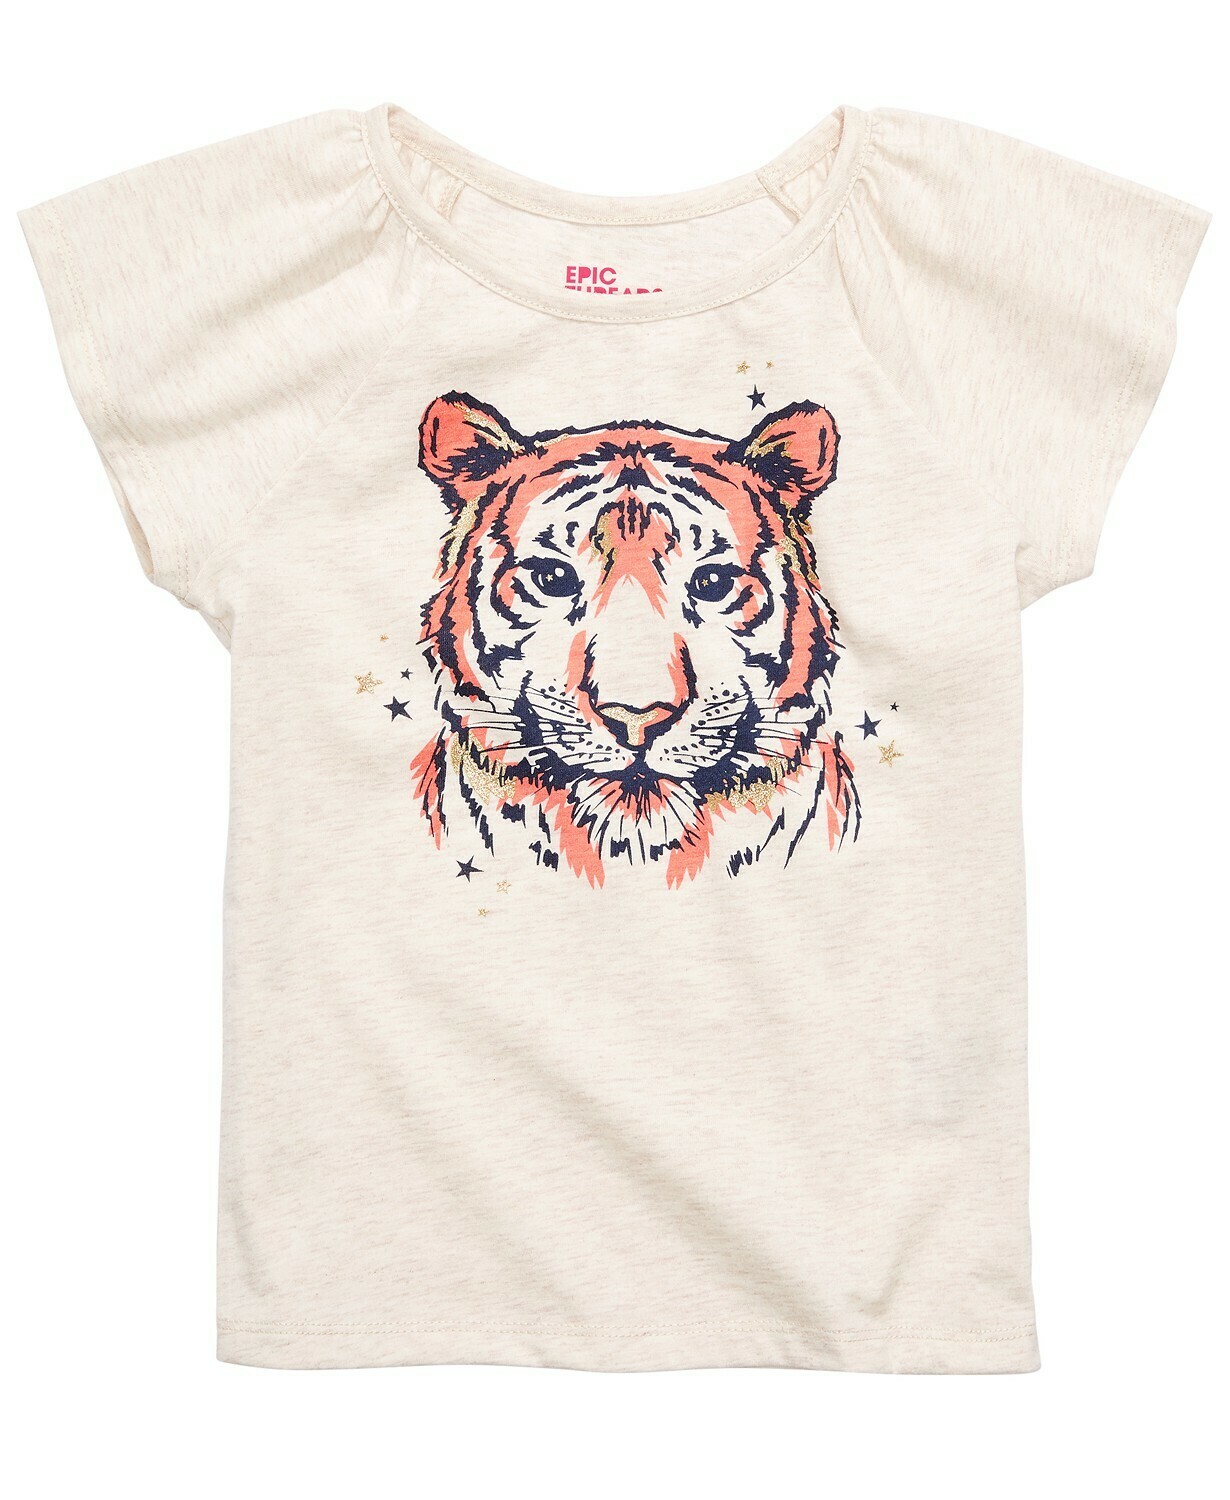 Epic Threads Toddler Girls Tiger T-Shirt